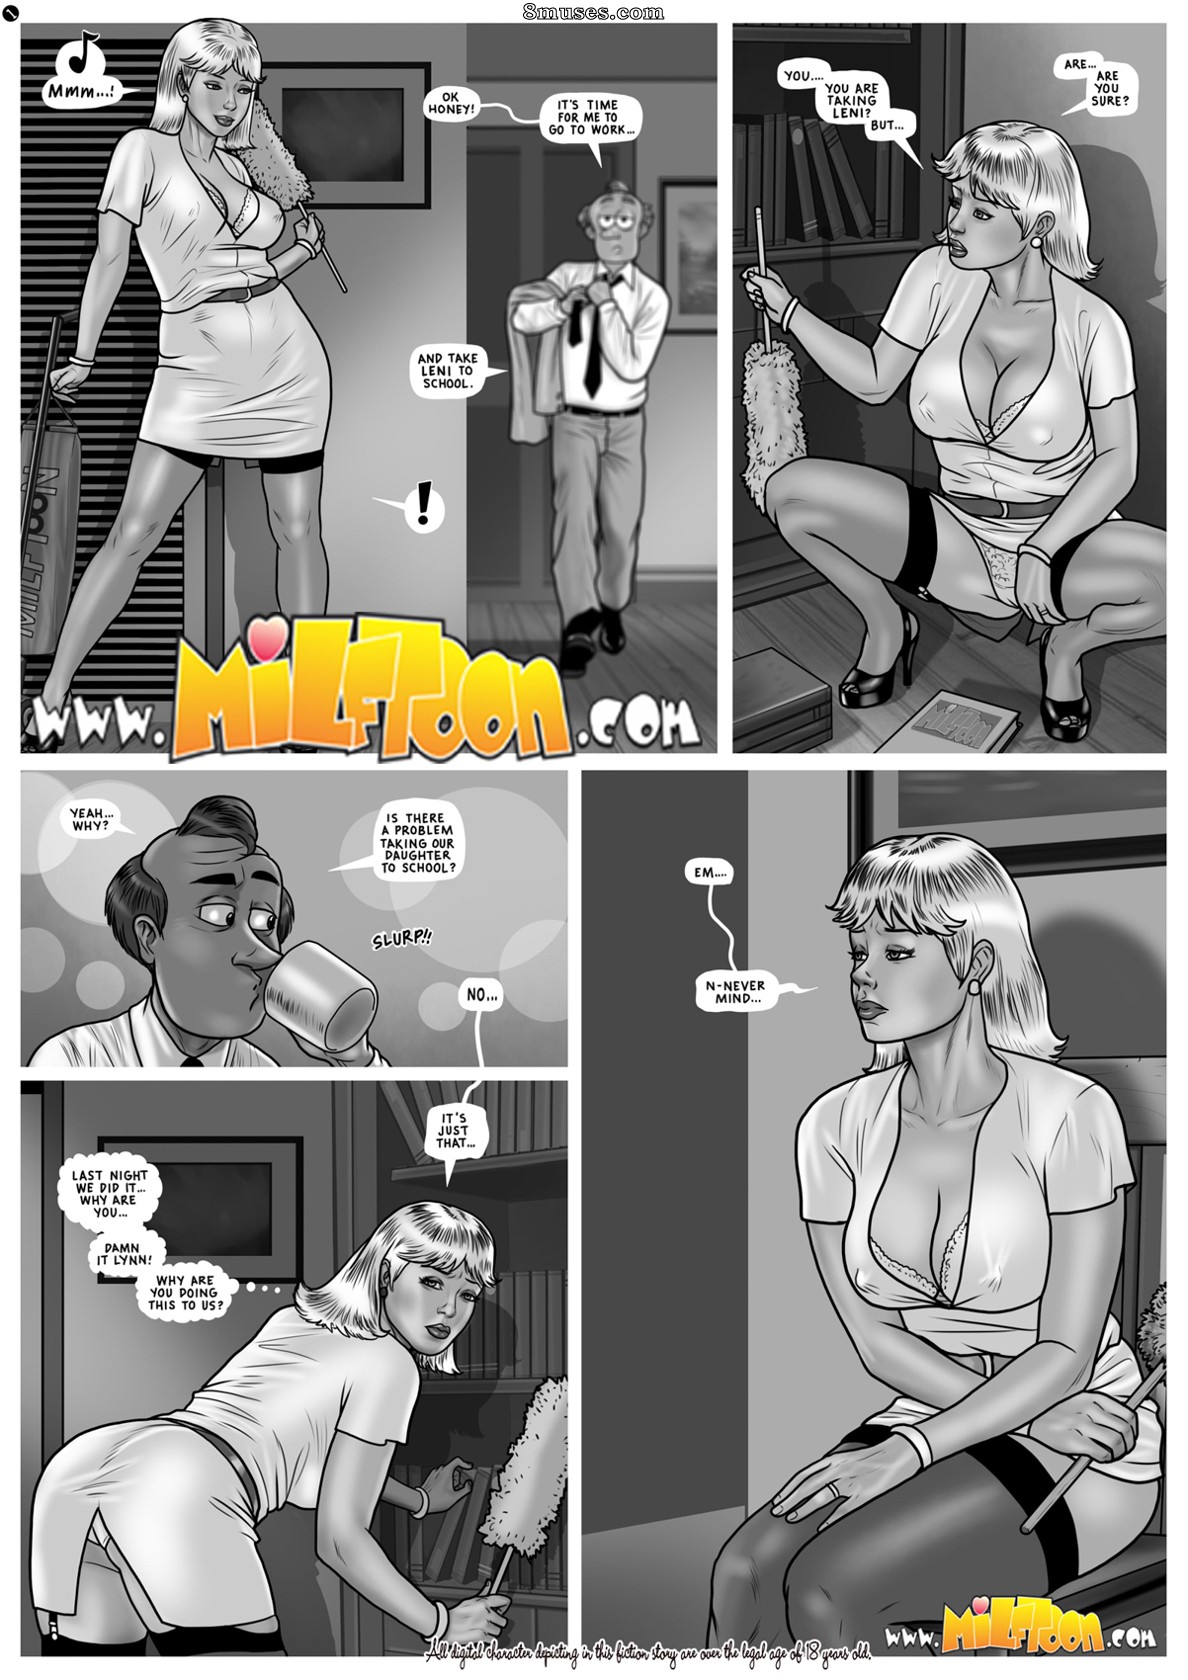 Cartoon Porn Comics Archives - Milftoon Comics | Free porn comics - Incest  Comics